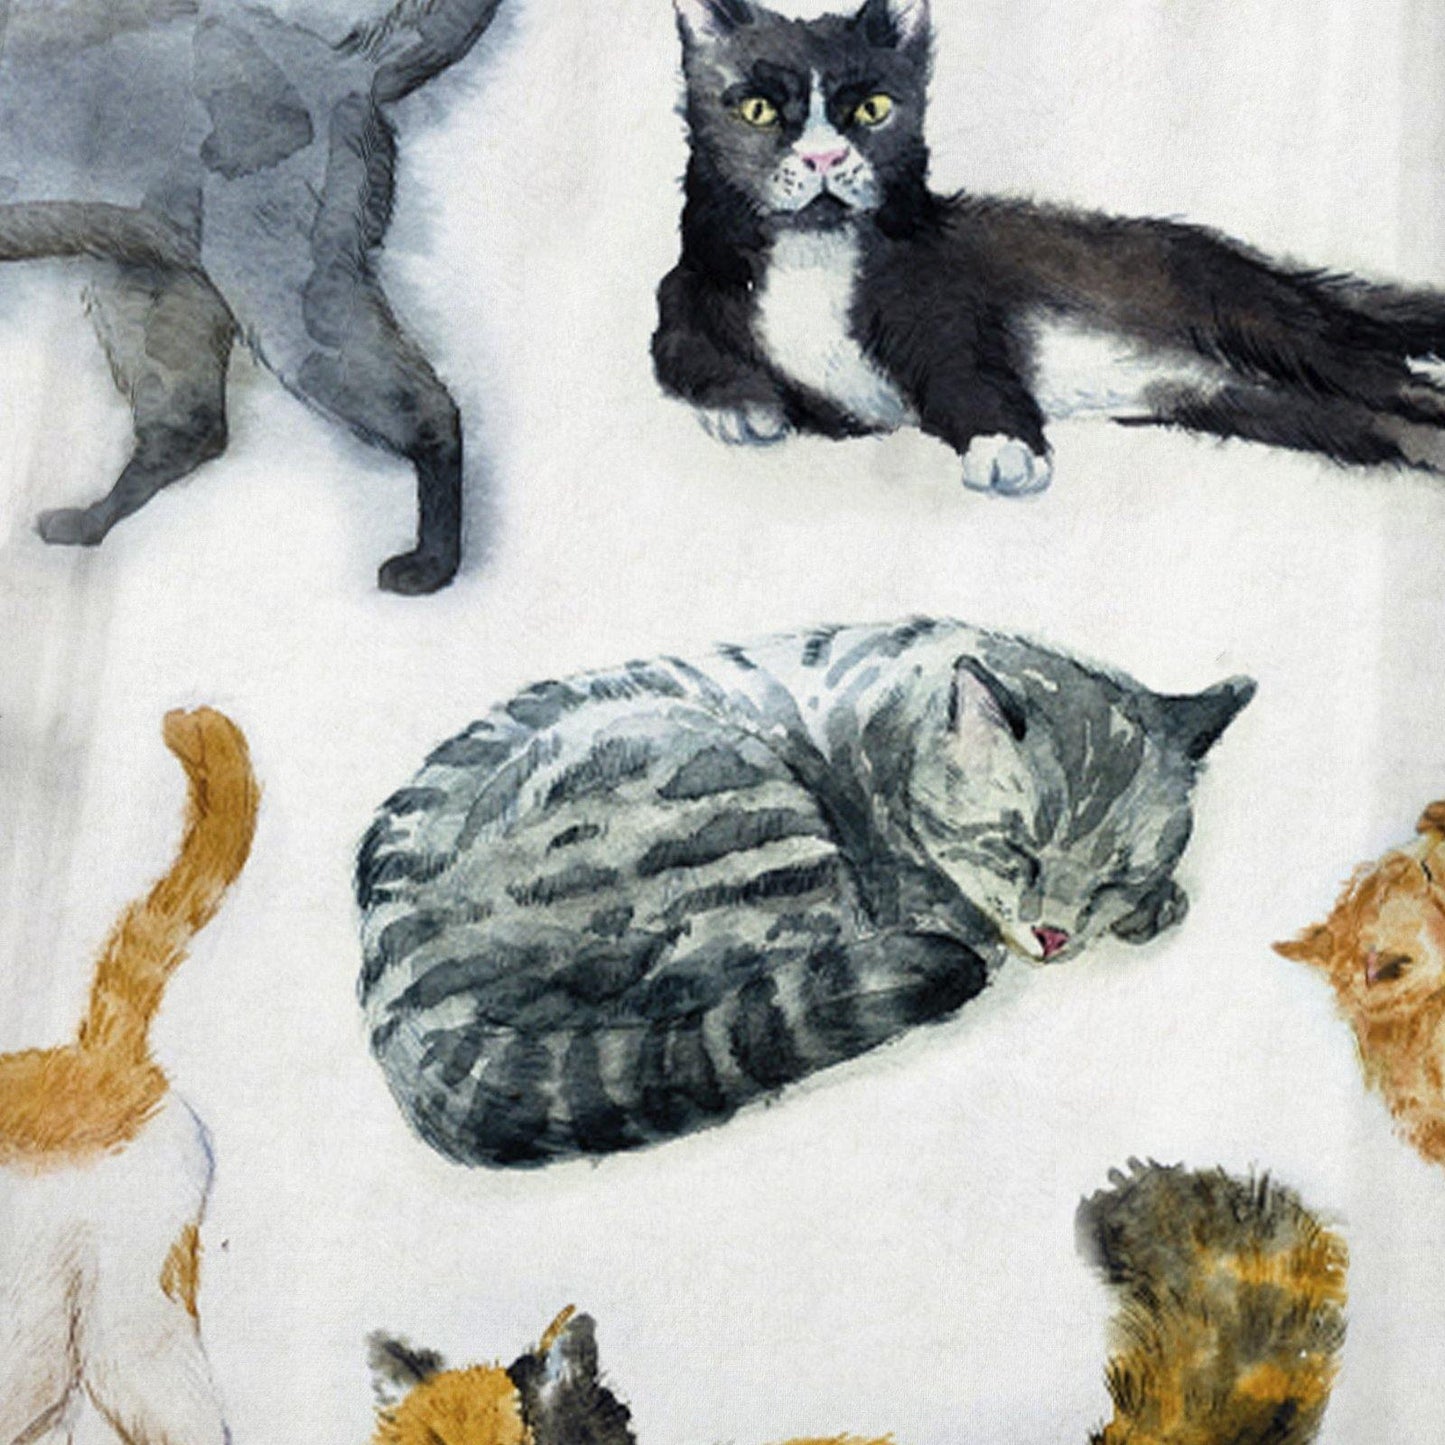 WONGS BEDDING Cat Atlas fleece blanket bedroom living room decoration blanket - Wongs bedding